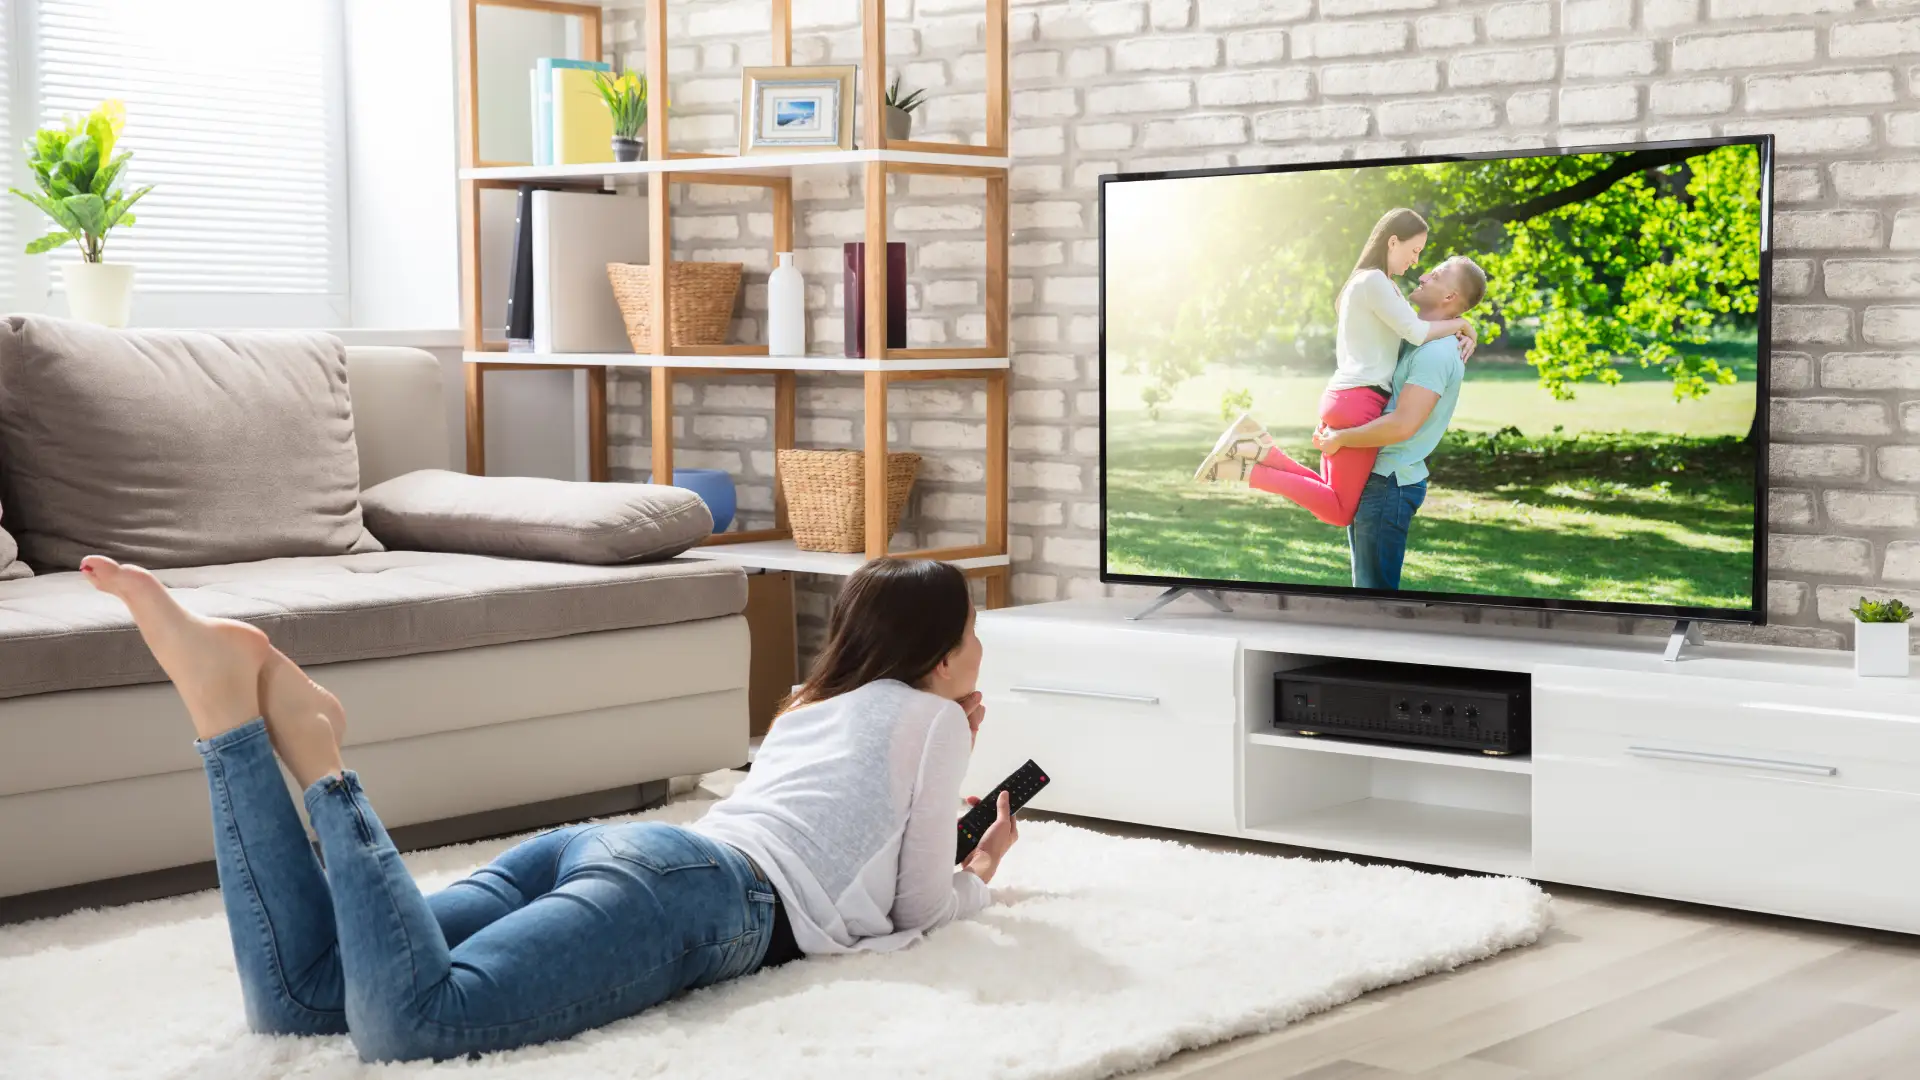 Que smart TV escolher? Saiba quais marcas são mais completas em